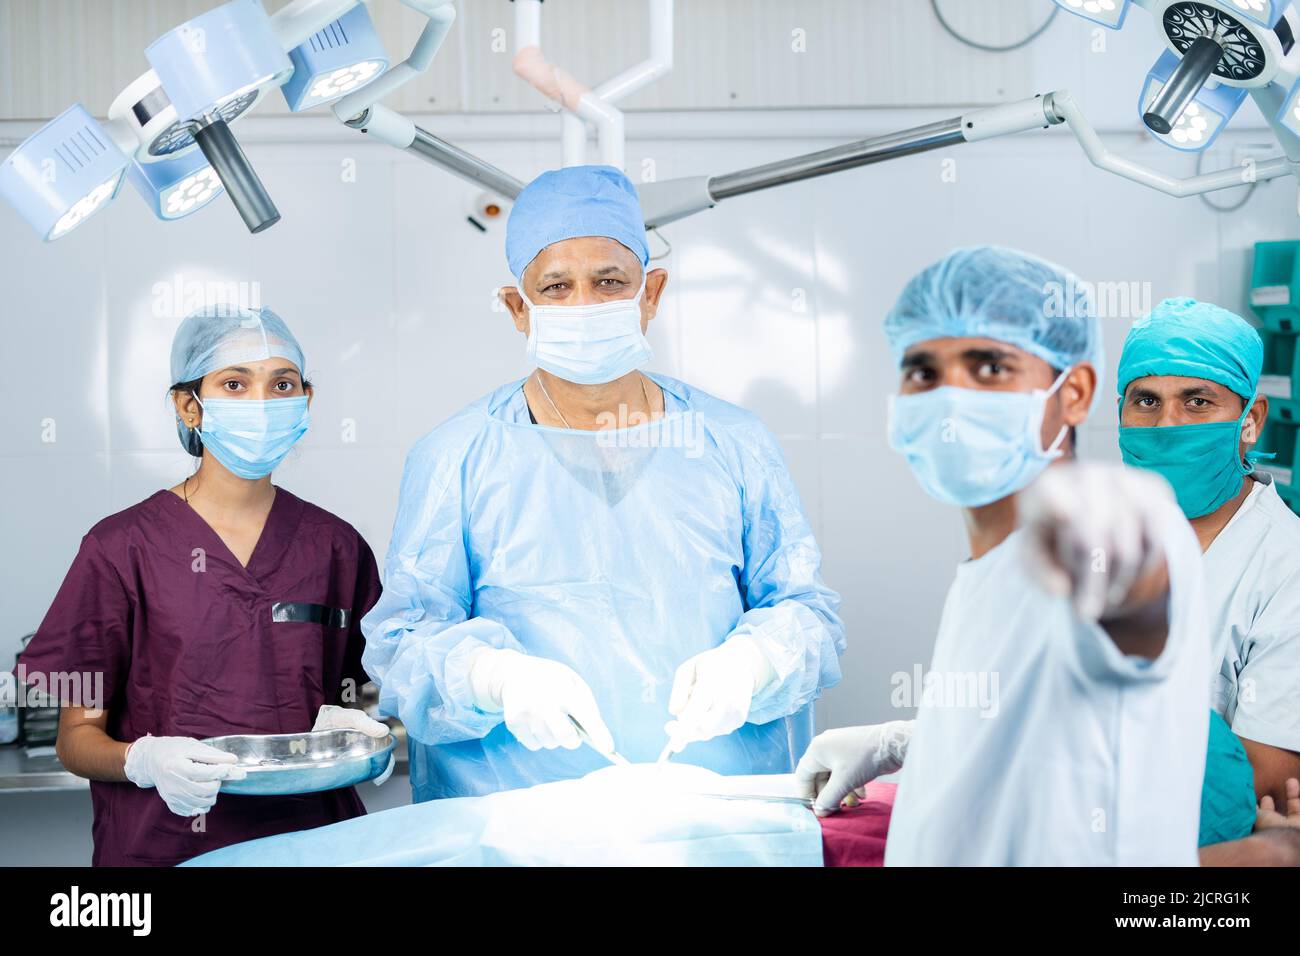 Surreon operieren oder Chirurgie, indem Sie Monitor auf OP-Theater mit unterstützenden Mitarbeitern - Konzept der Technologie, medizinische Fachkräfte und Stockfoto